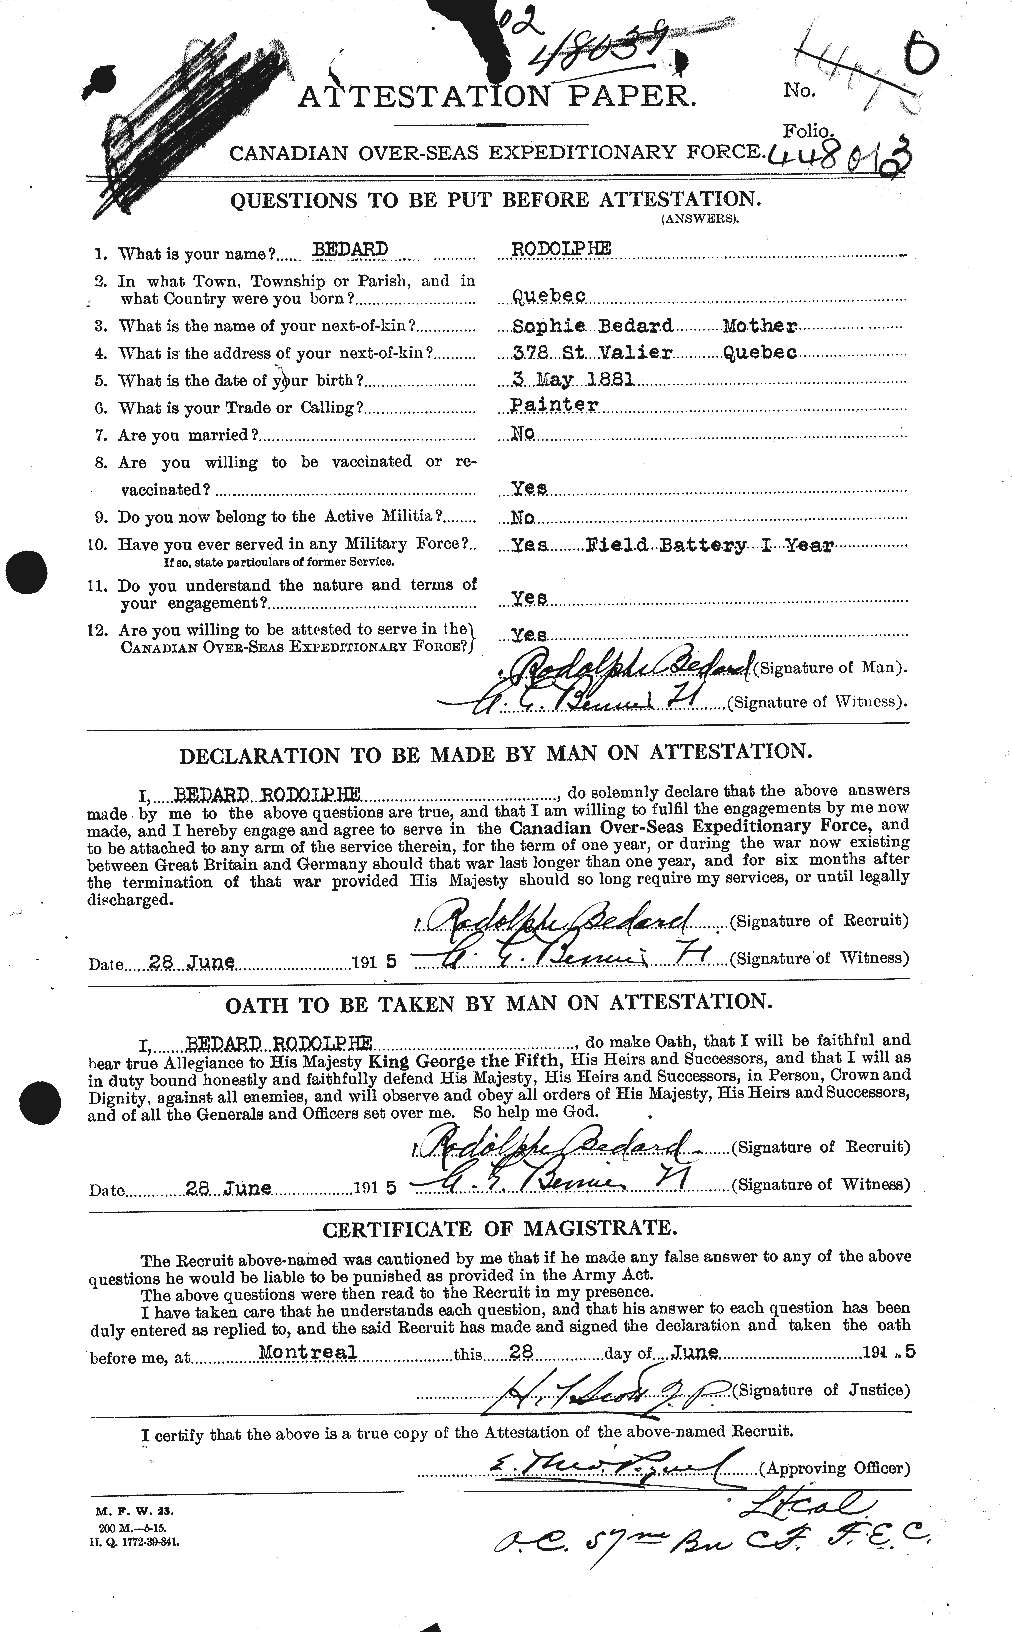 Dossiers du Personnel de la Première Guerre mondiale - CEC 236080a